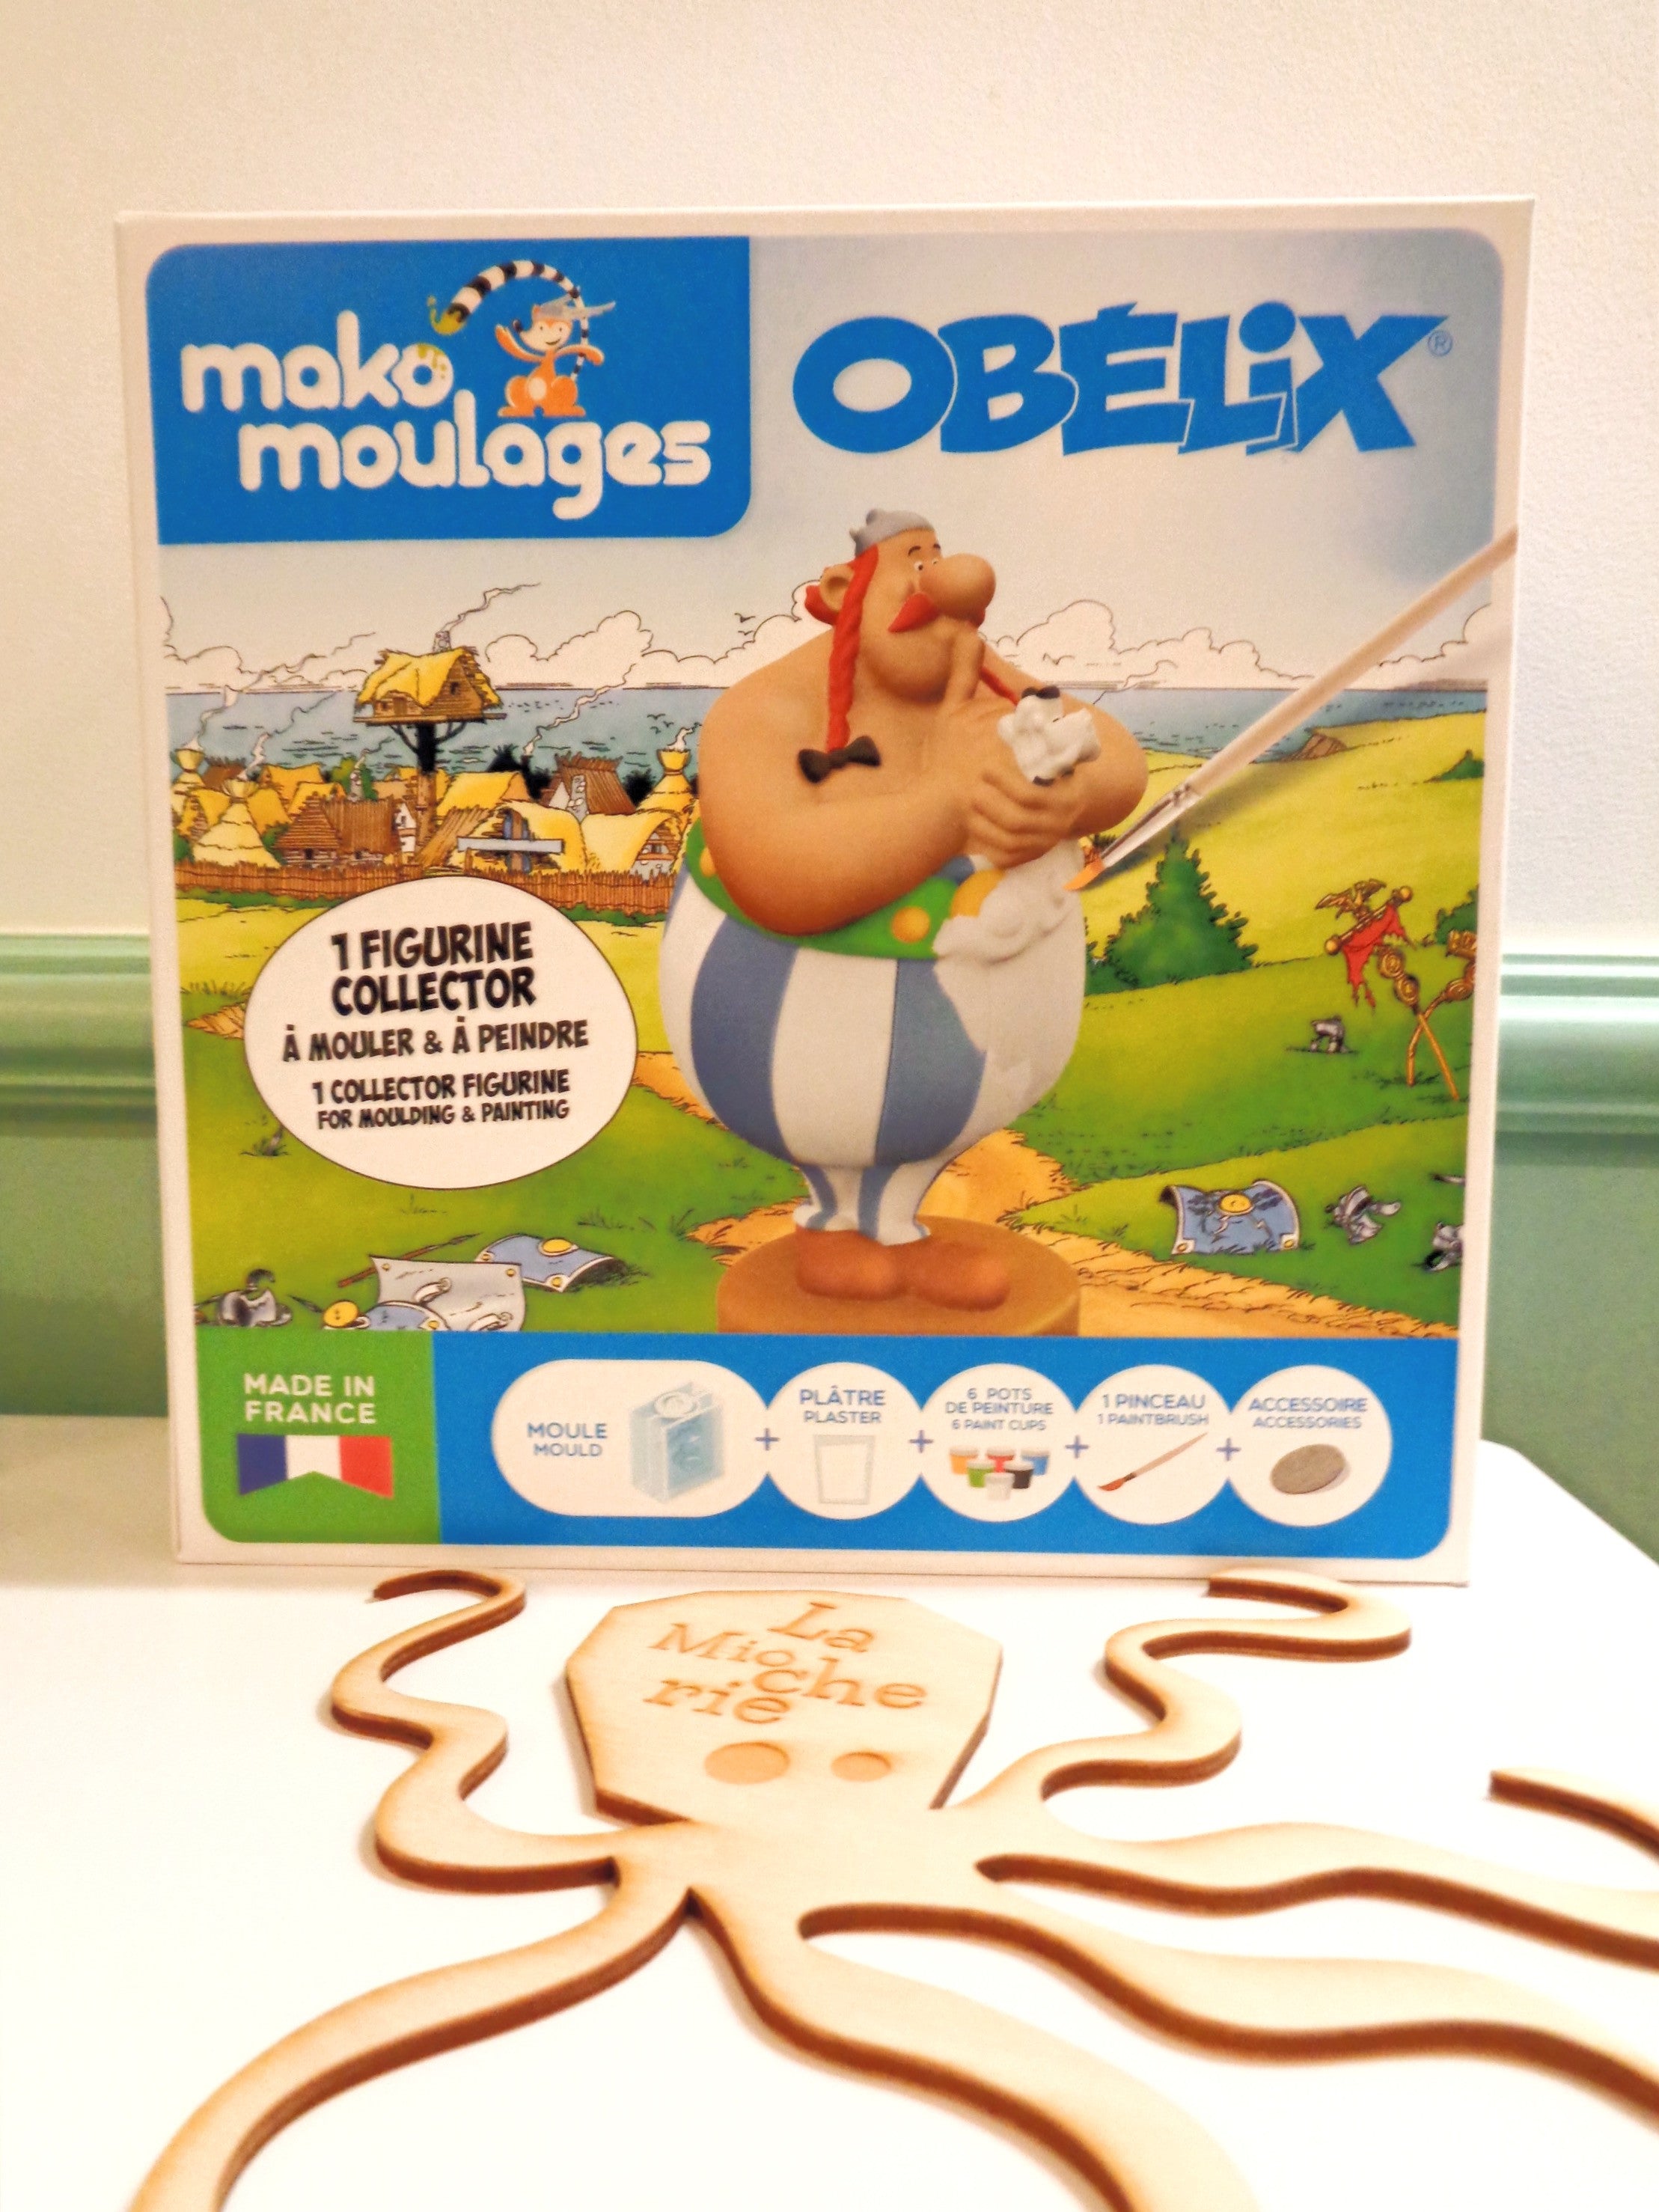 Kit Obélix - Made in France - Mako Moulages